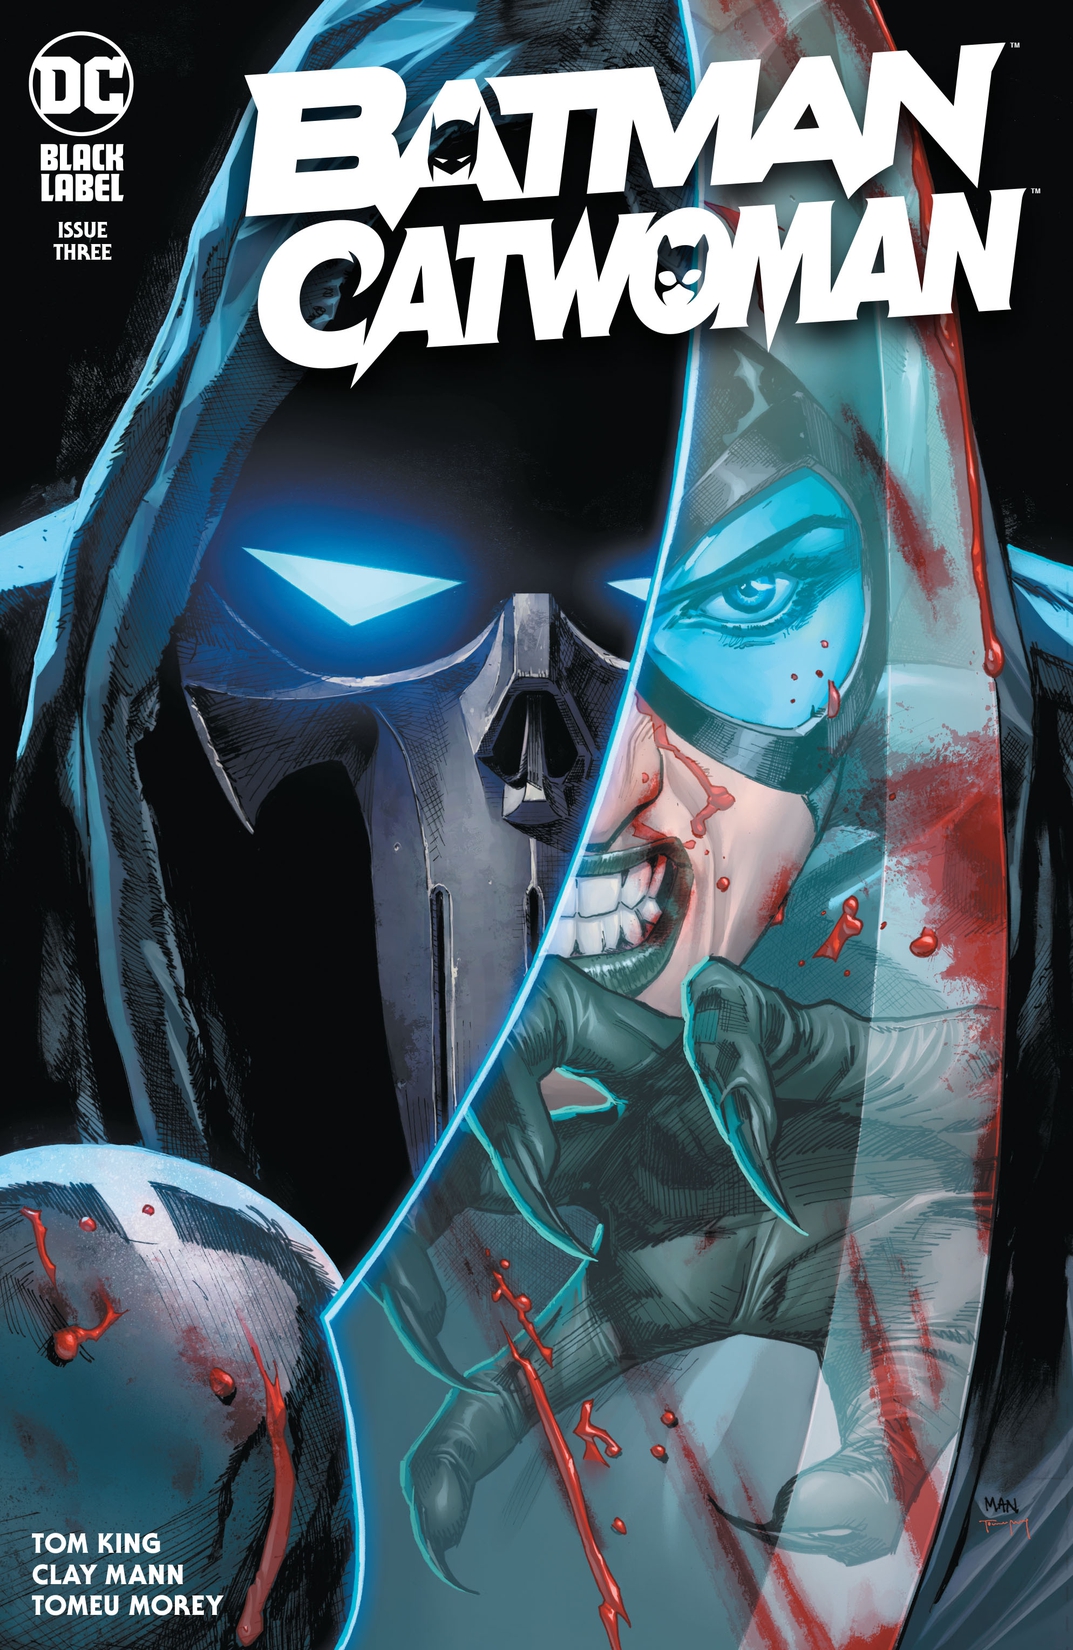 Batman/Catwoman #3 preview images